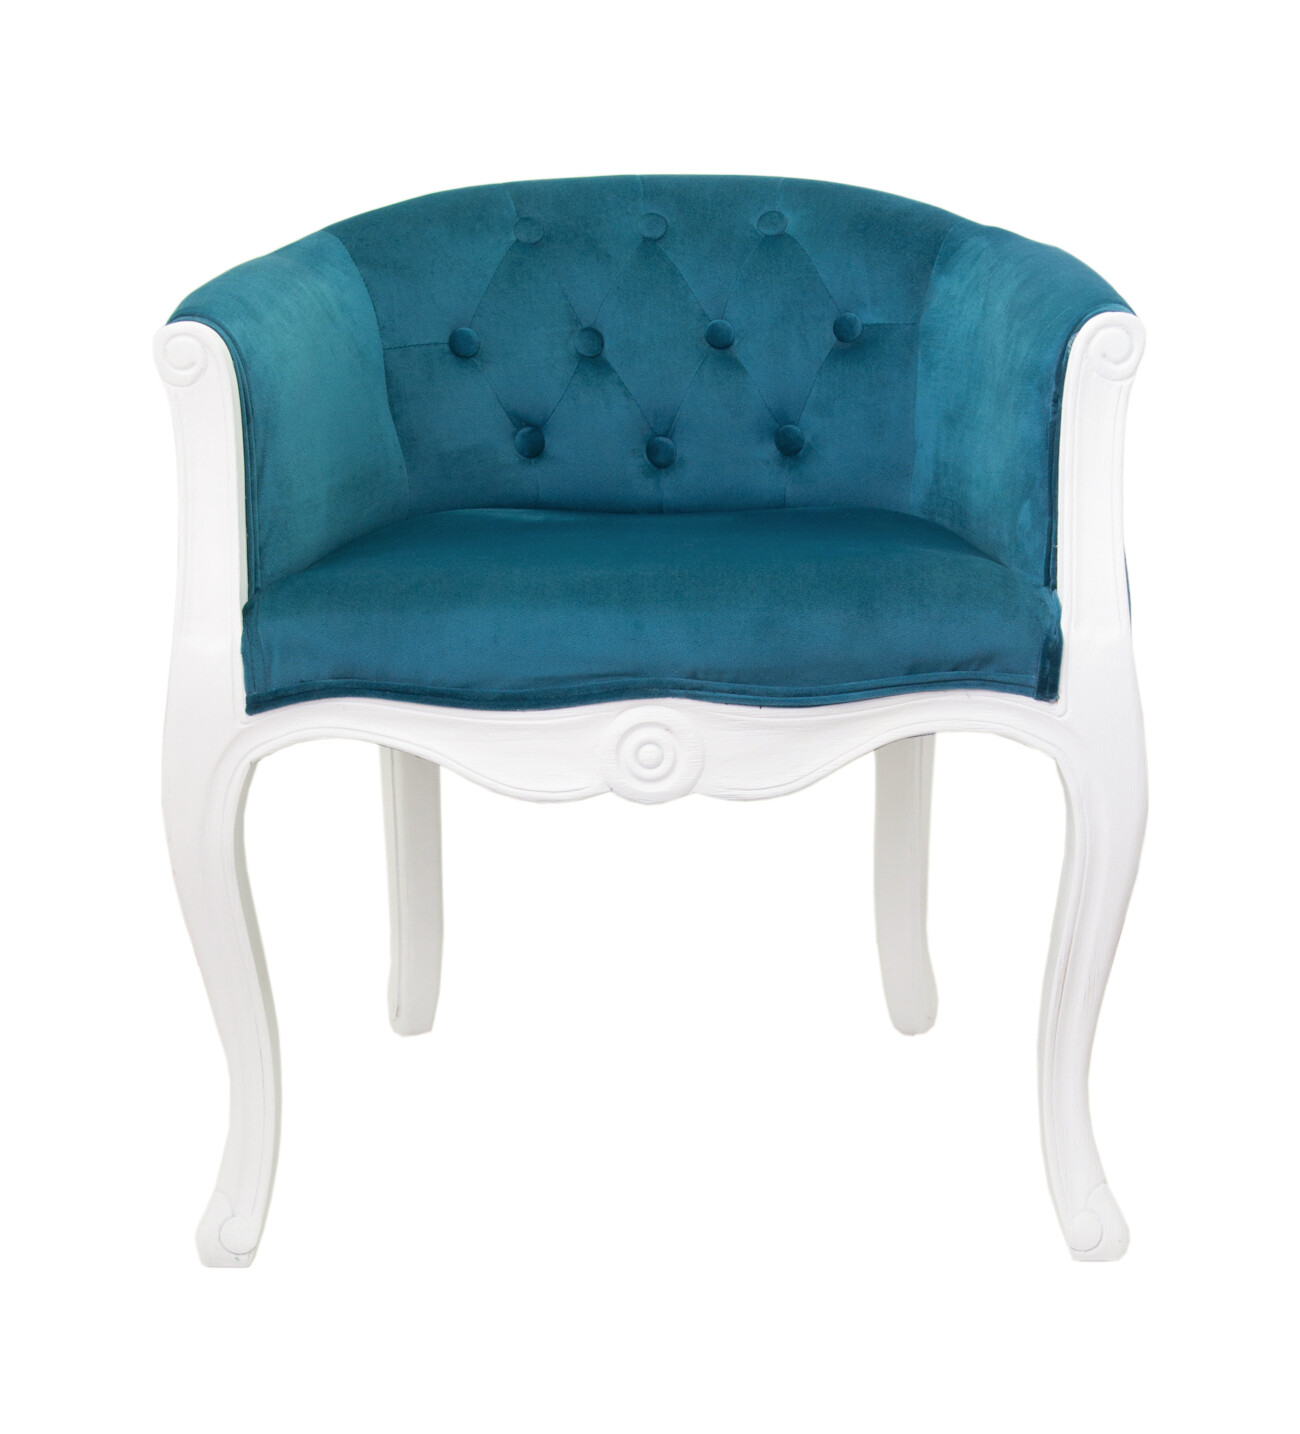 Кресло с мягкими подлокотниками голубое Kandy от Mak-interior